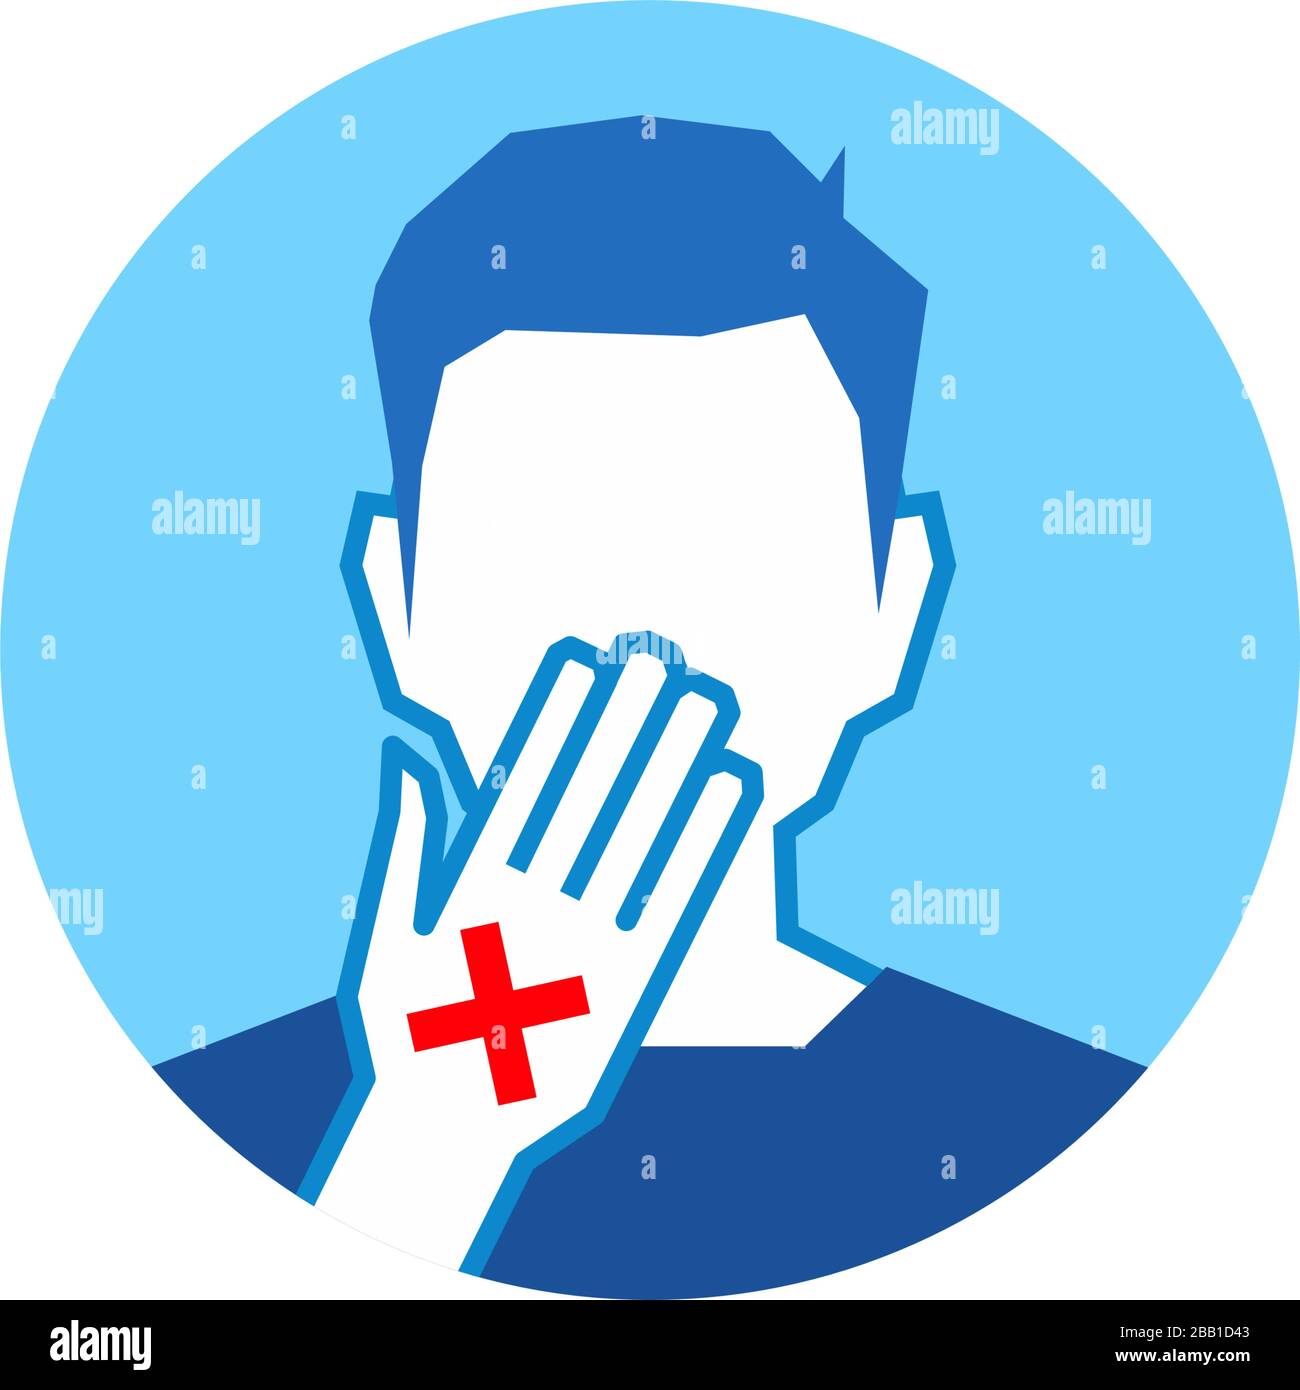 Covid-19 oder Coronavirus 2019-nCoV Krankheitsprävention Infografisches Symbol, medizinische und medizinische Konzeptvektor-Illustration. Berühren Sie Ihr Gesicht nicht mit Witz Stock Vektor